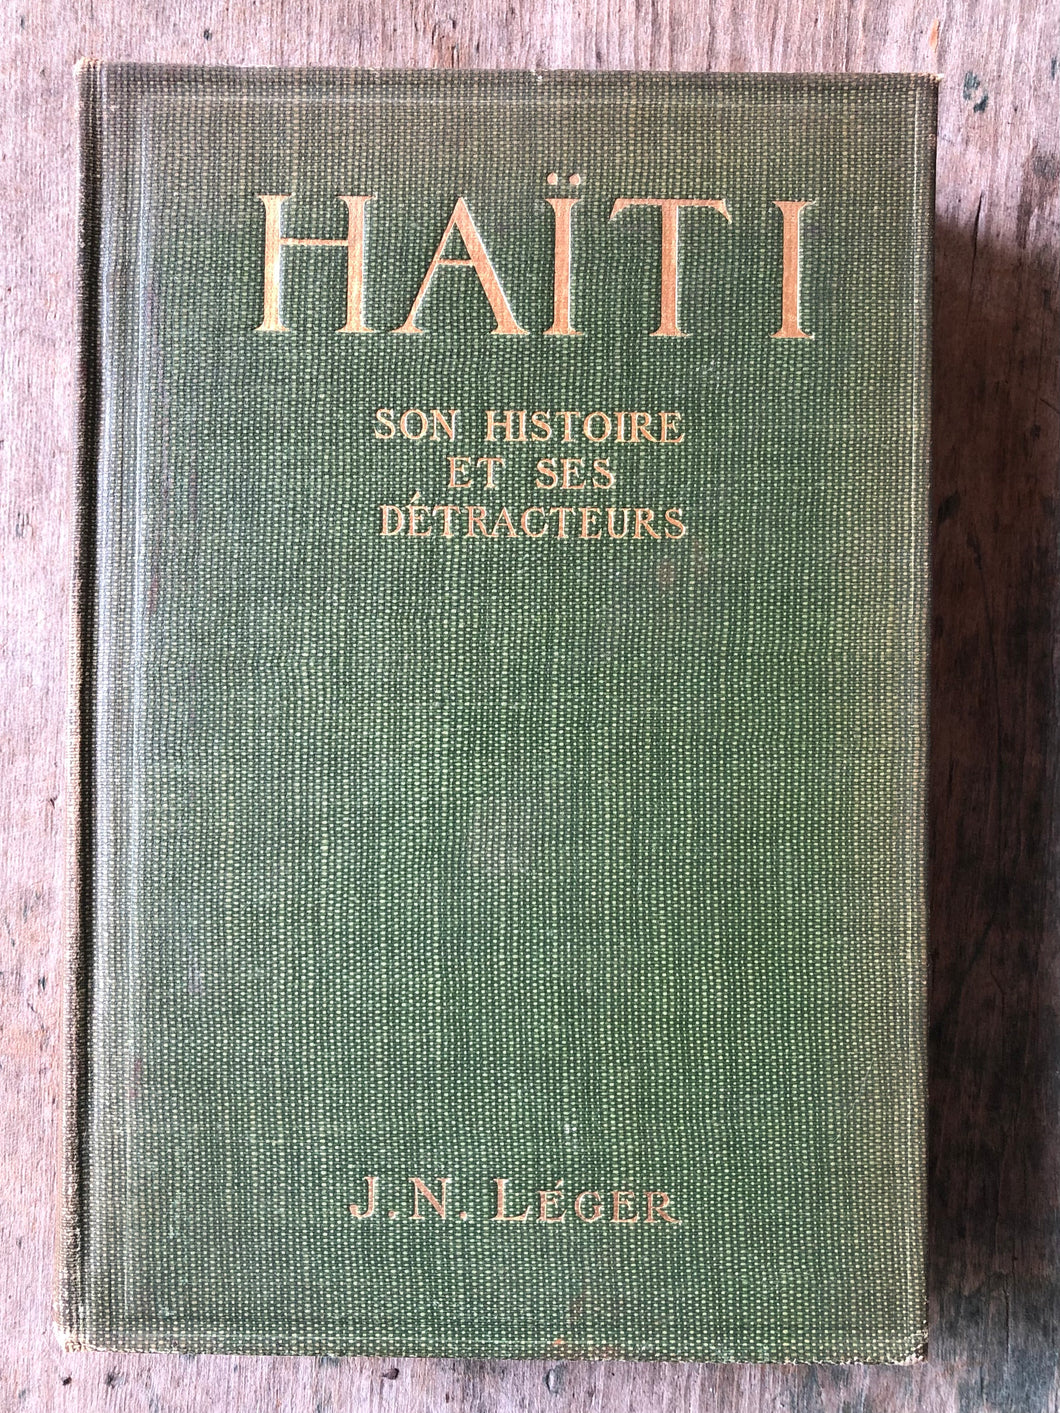 Haiti: Son Histoire et ses Détracteurs by J. N. Léger